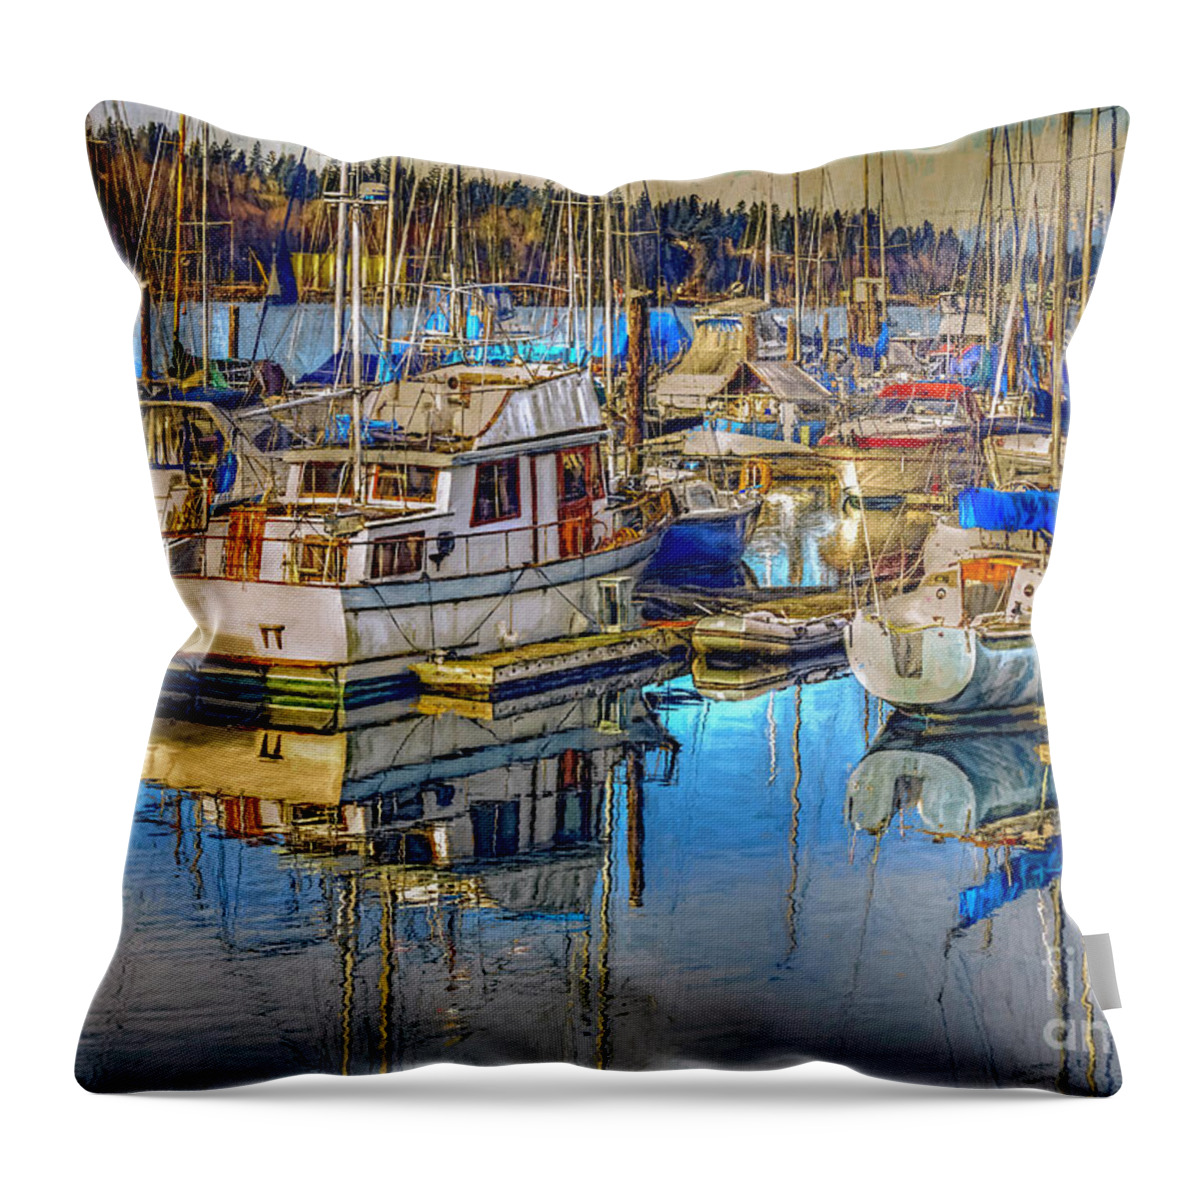 Sailboats Throw Pillow featuring the digital art Still Water Masts by Jean OKeeffe Macro Abundance Art